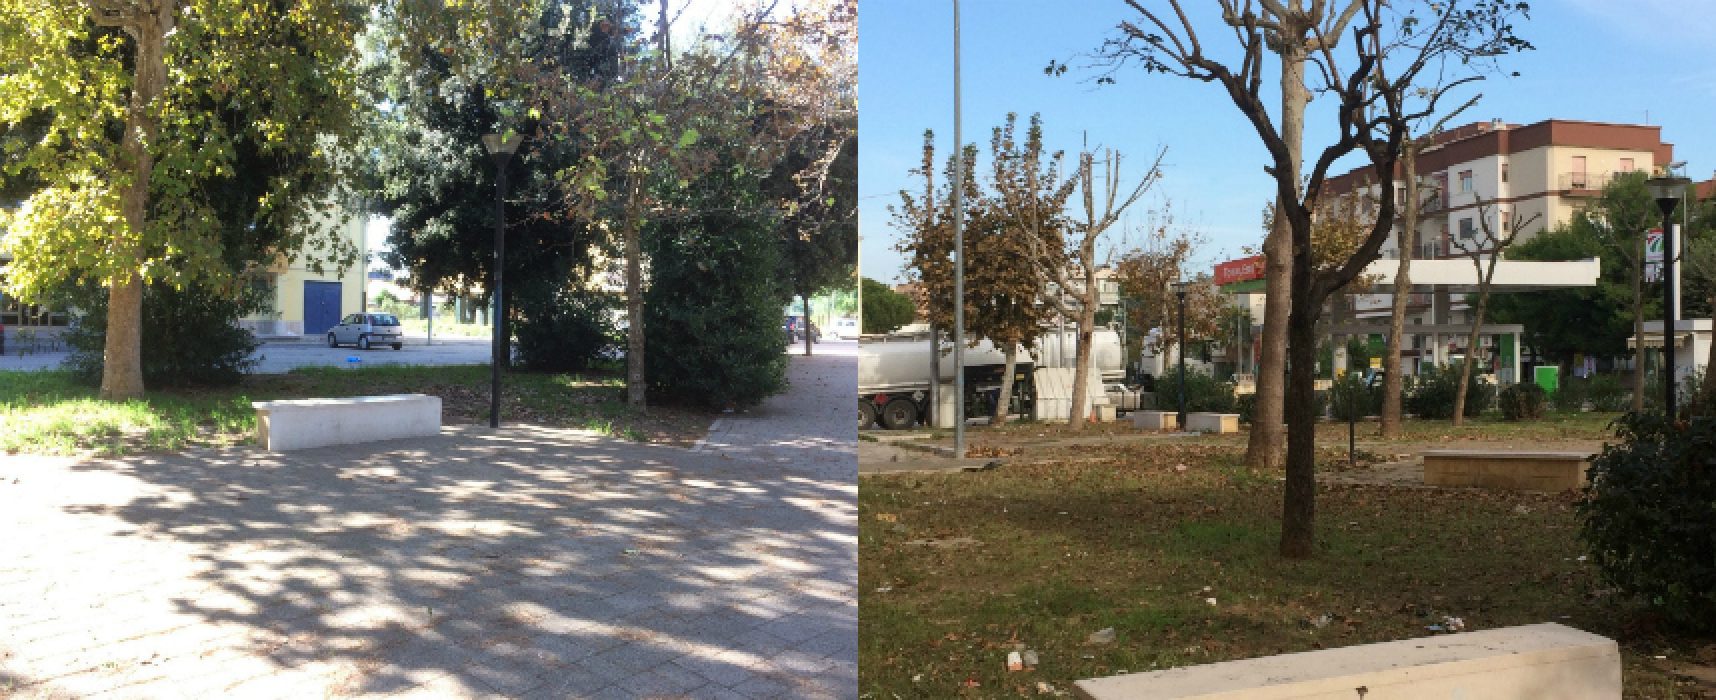 Bisceglie 5 Stelle: “Danneggiati 13 alberi di platano su 17 in piazza Salvo D’Acquisto”